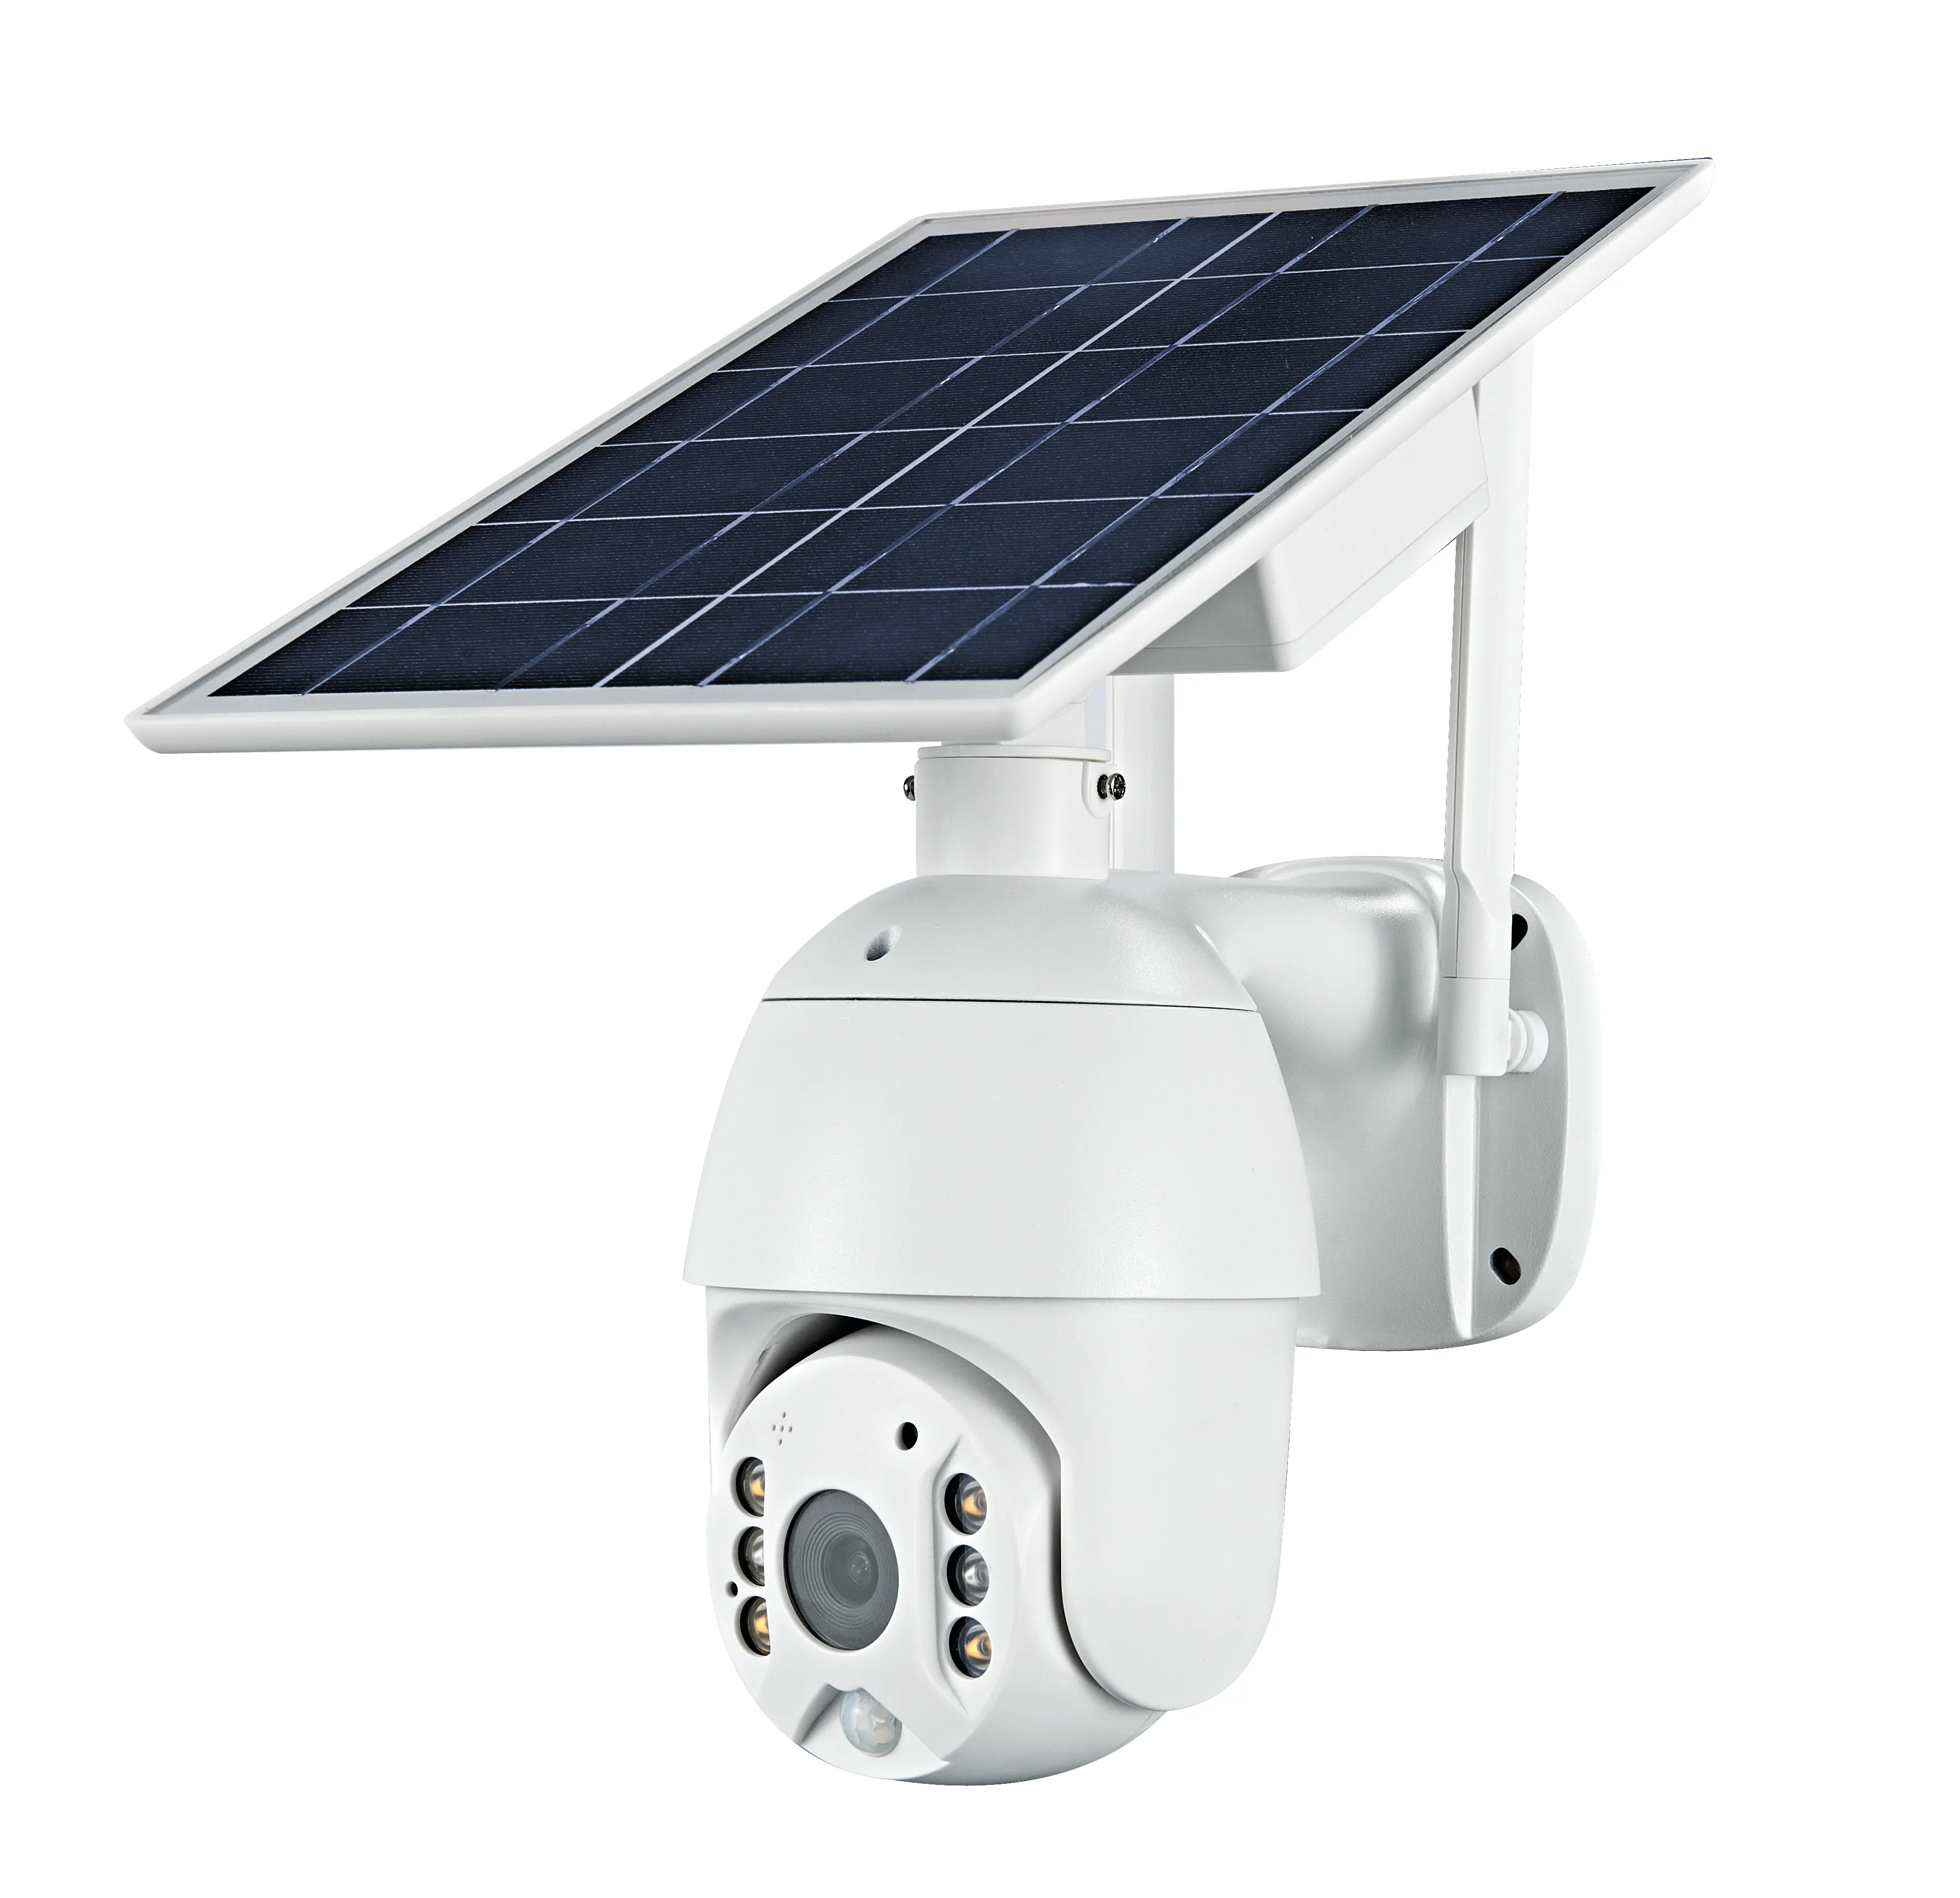 Caméra à énergie solaire sans fil WiFi 4G 3G emplacement pour carte sim CCTV caméra de sécurité IP support extérieur 128 carte mémoire